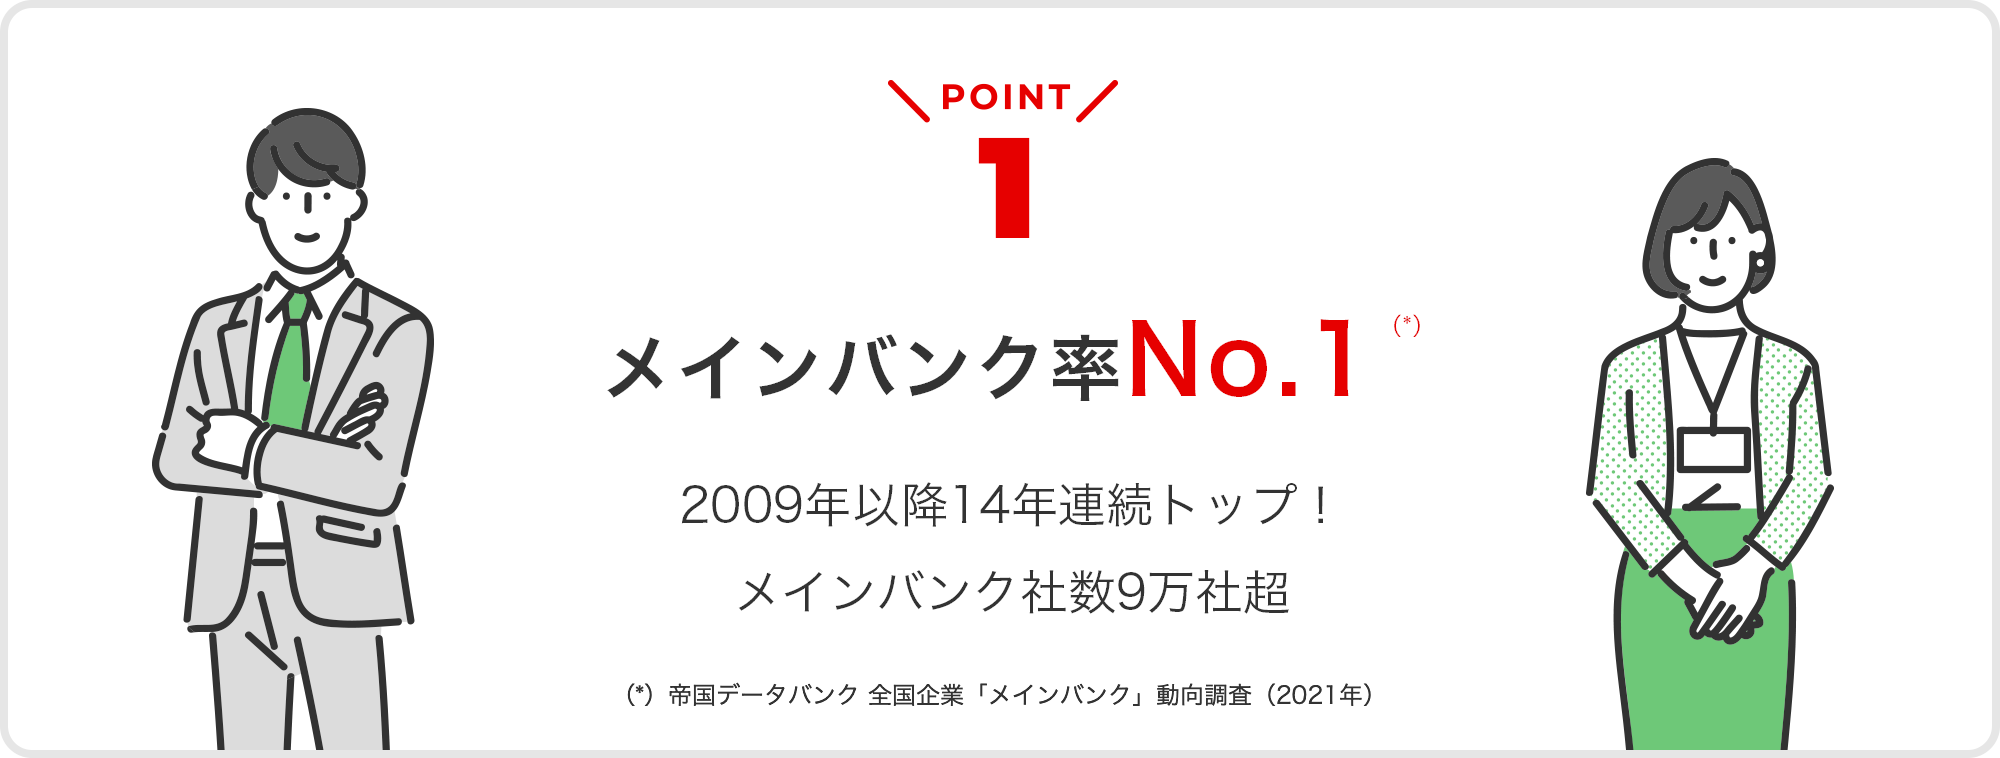 point01 メインバンク率No.1